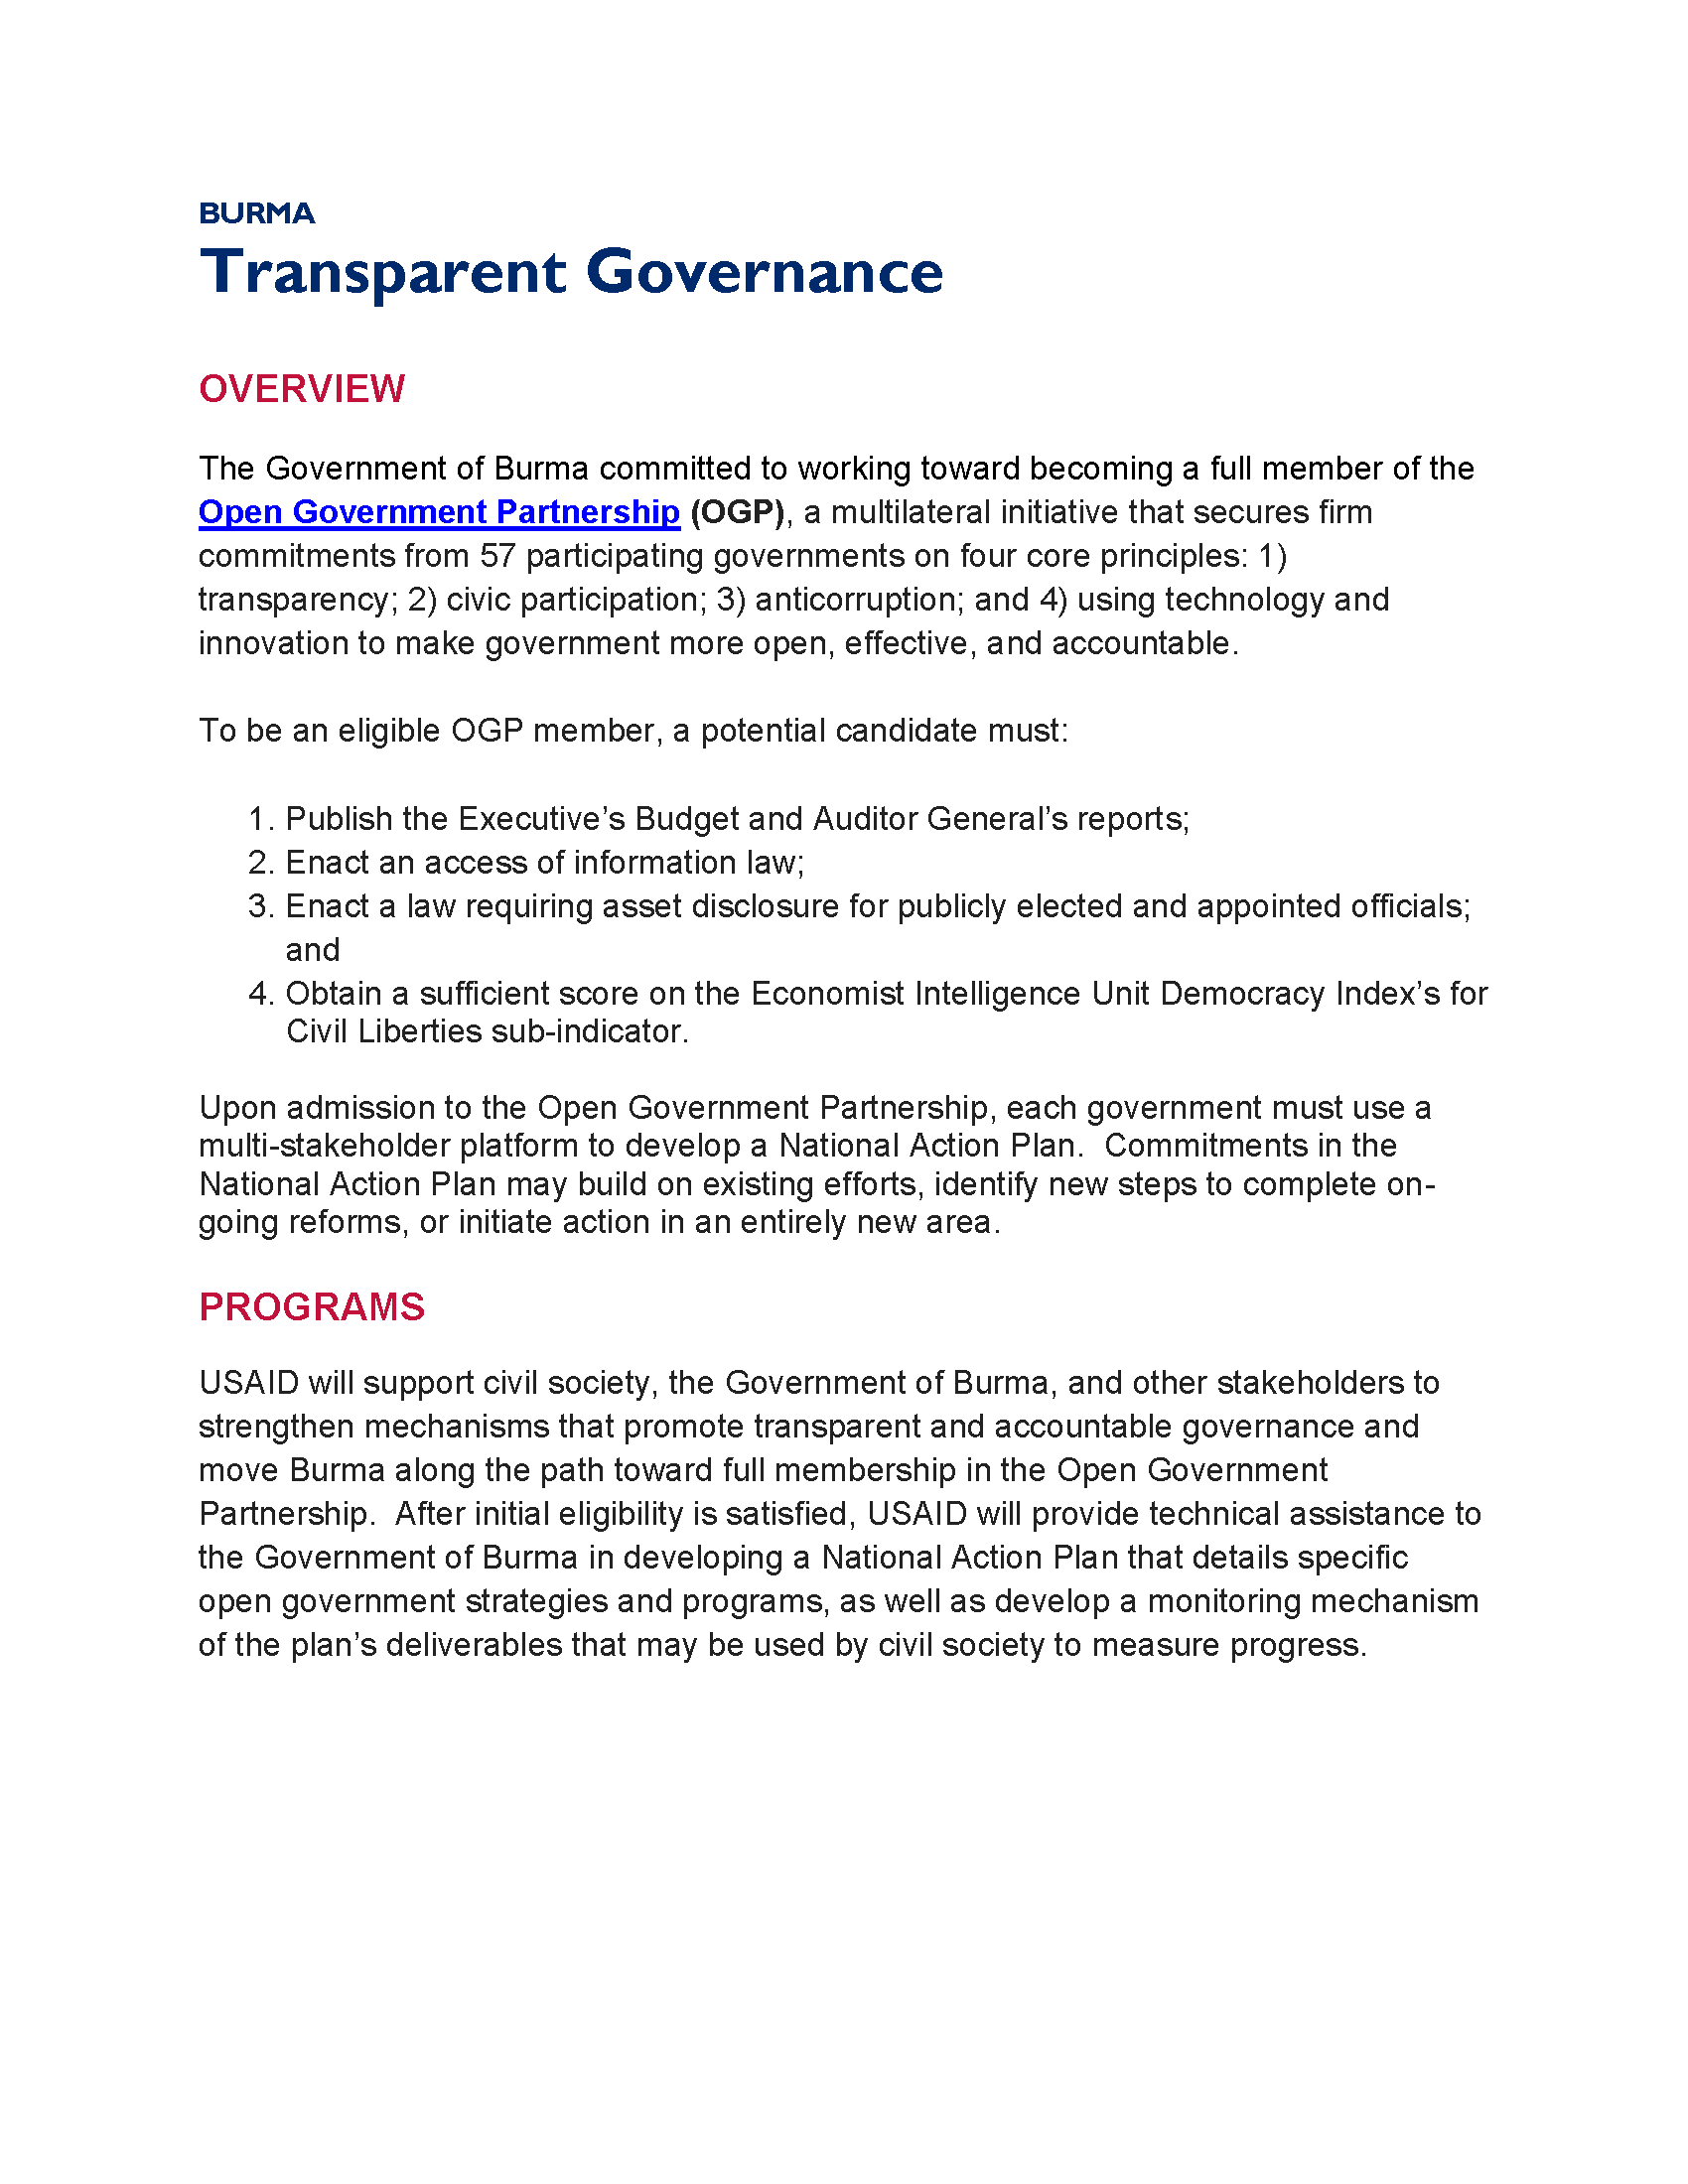 Burma Transparent Governance Fact Sheet